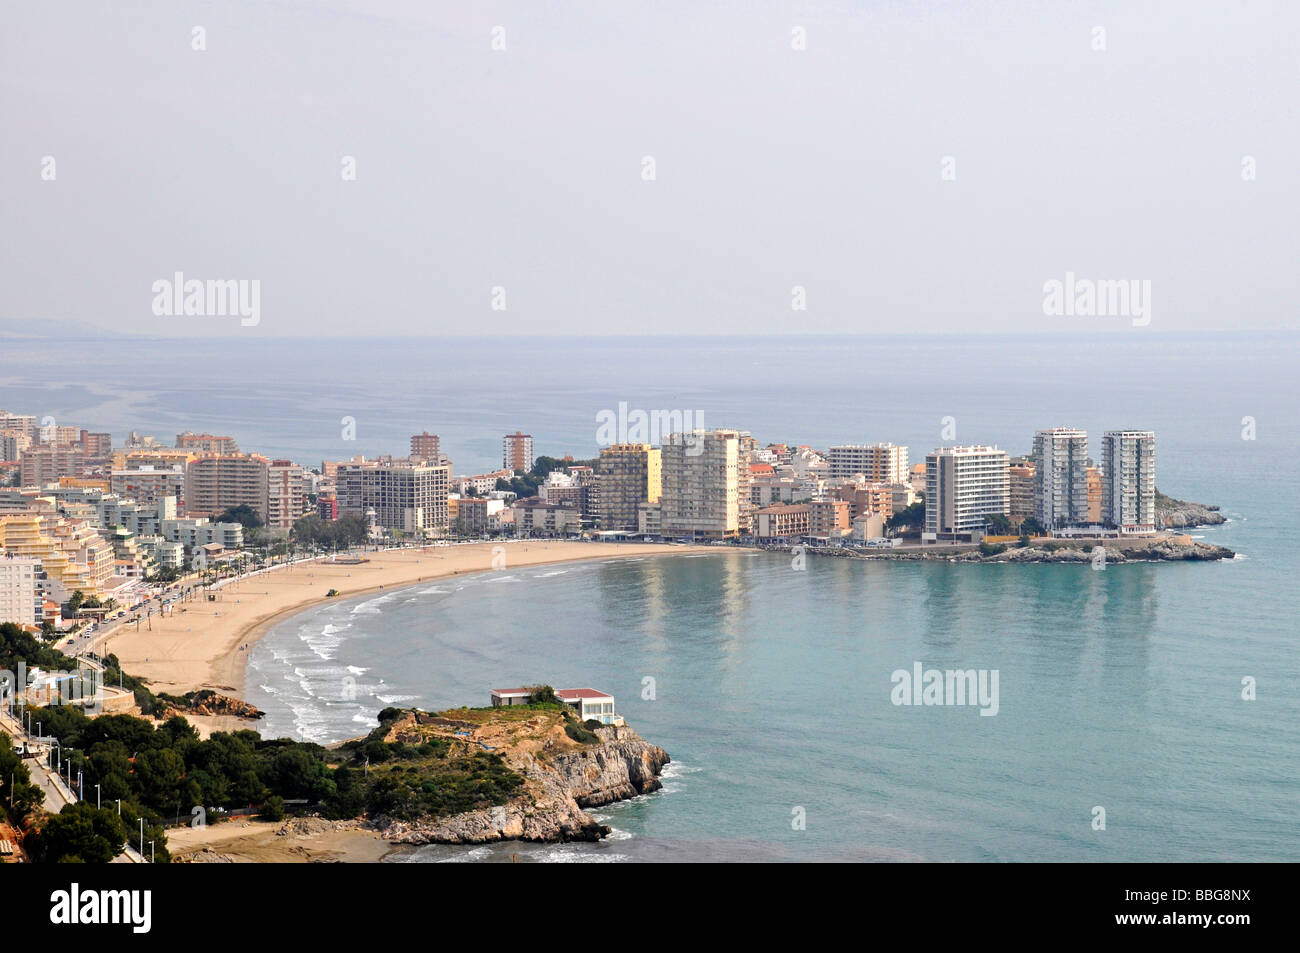 City view, Playa de la Concha beach, skyscrapers, Oropesa del Mar, Benicasim, Castellon, Valencia, Spain, Europe Stock Photo